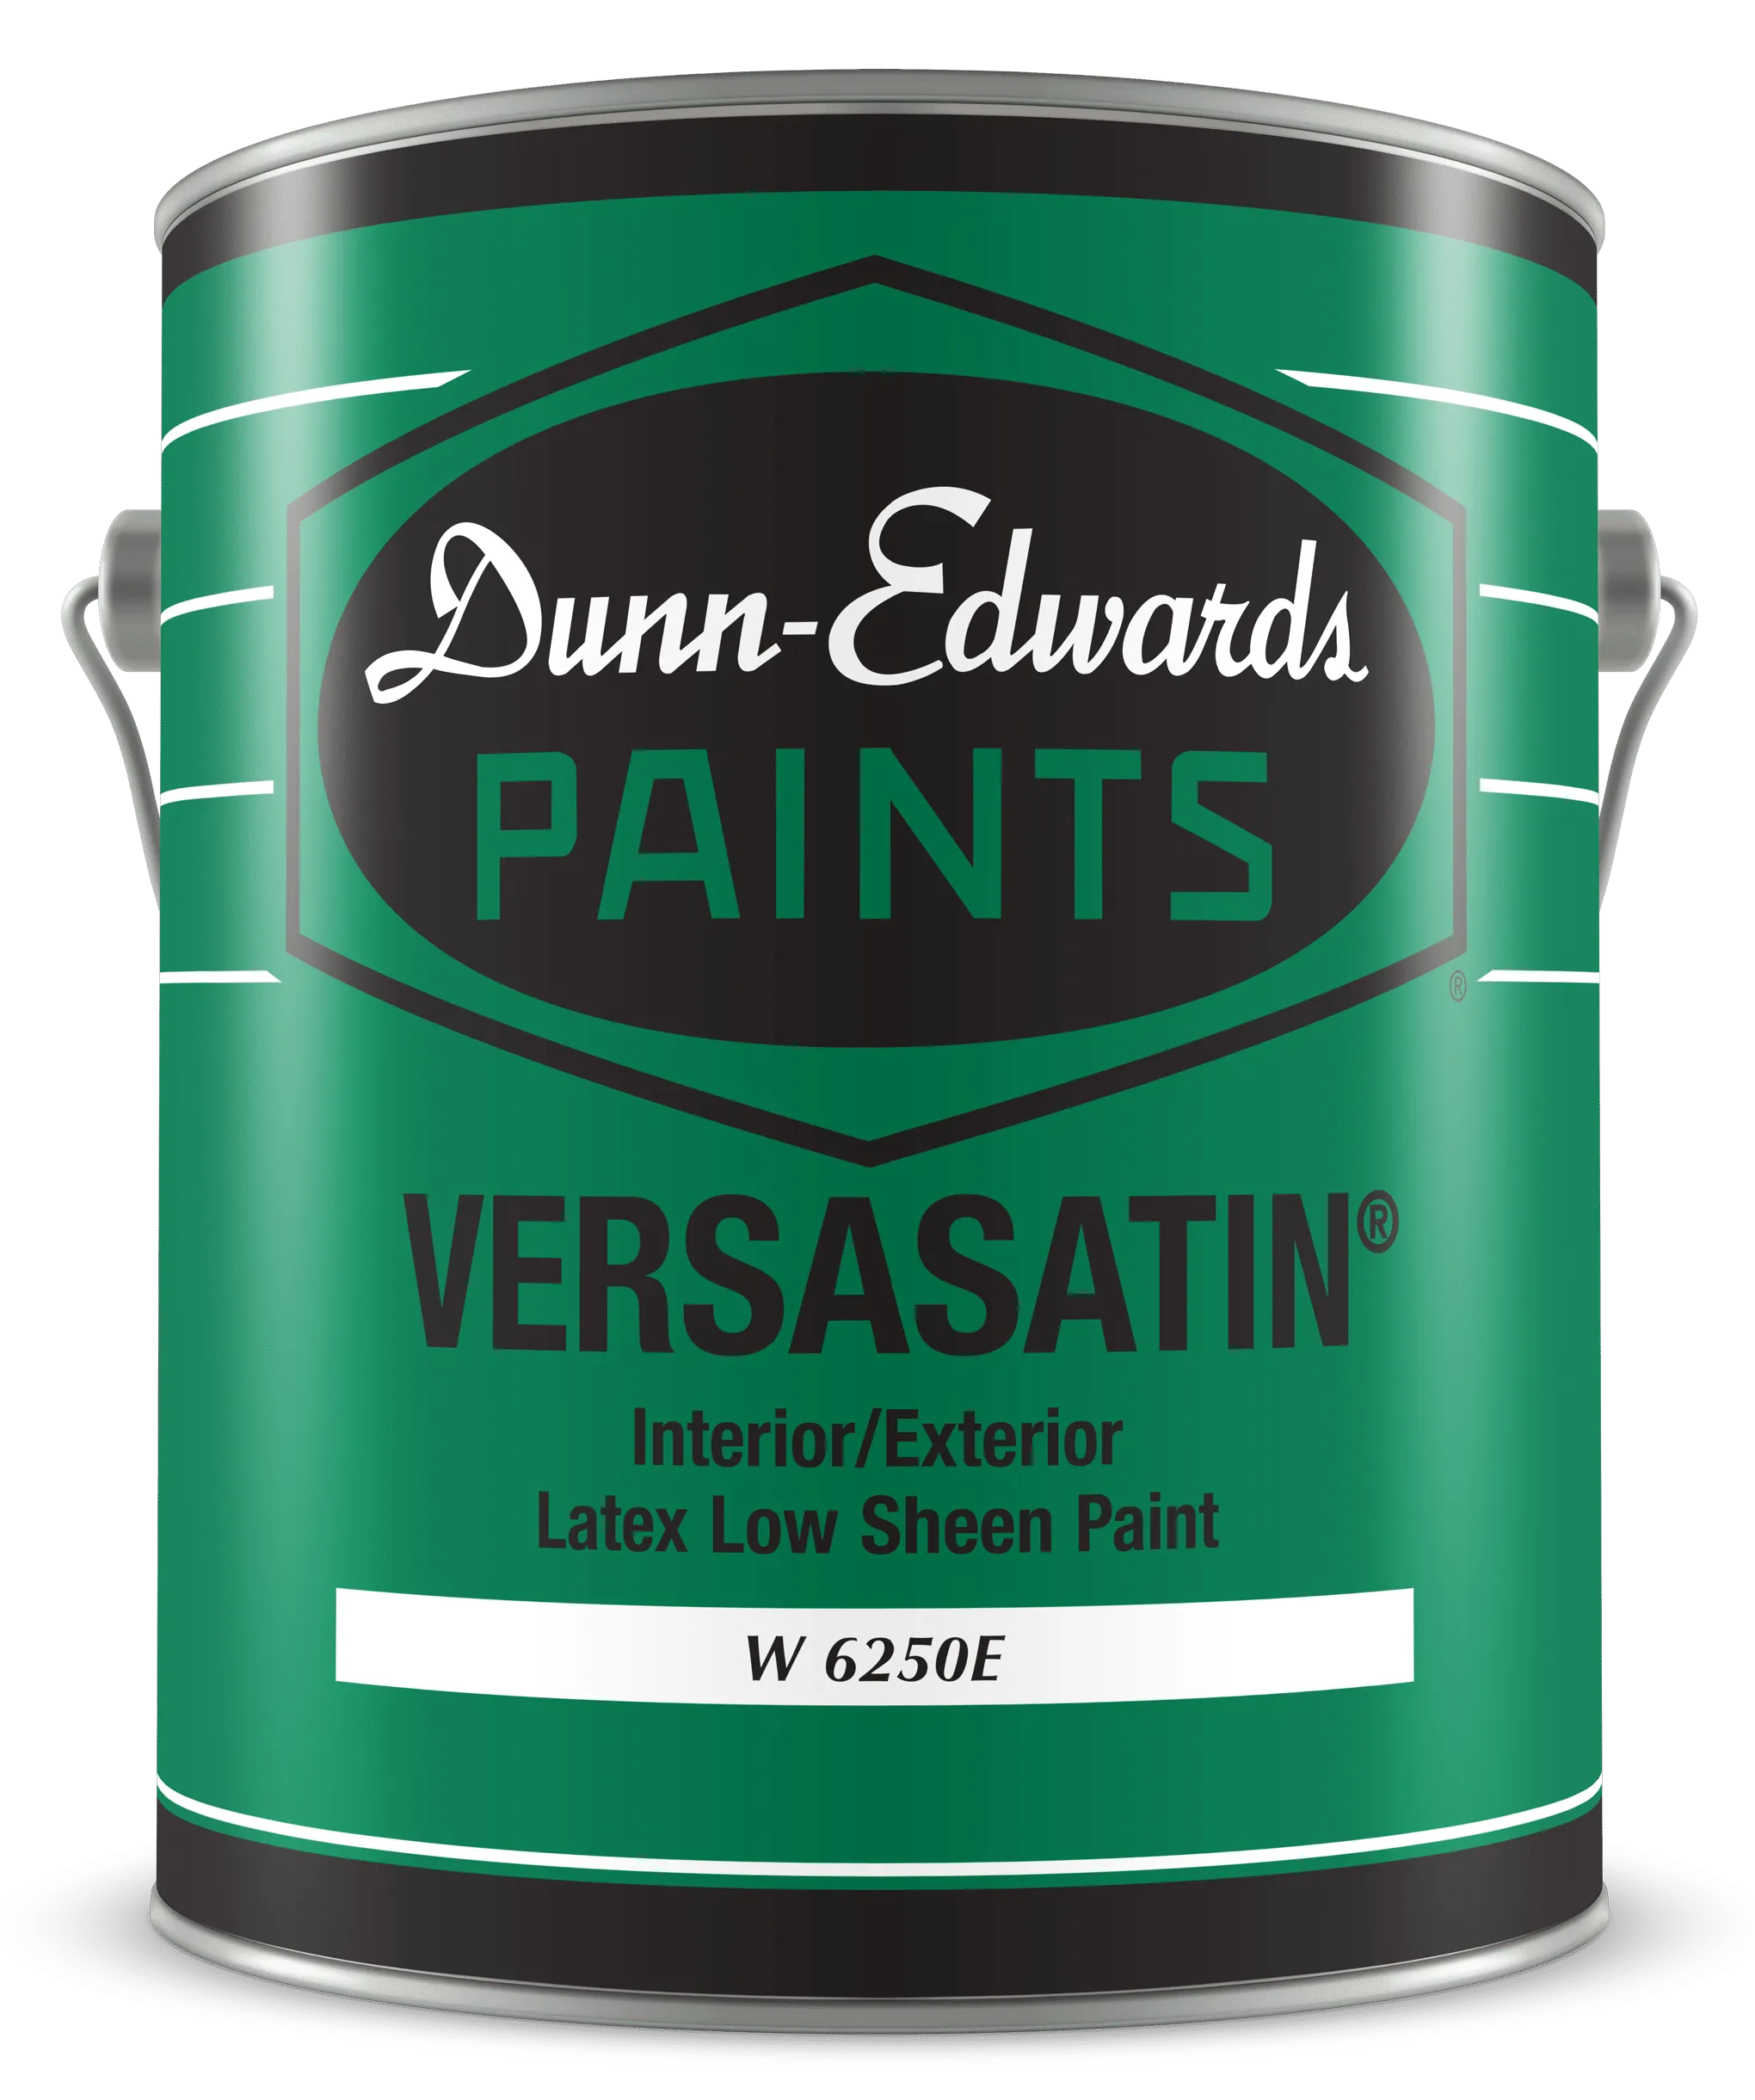 VERSASATIN Interior/Exterior Latex Low Sheen Paint Can